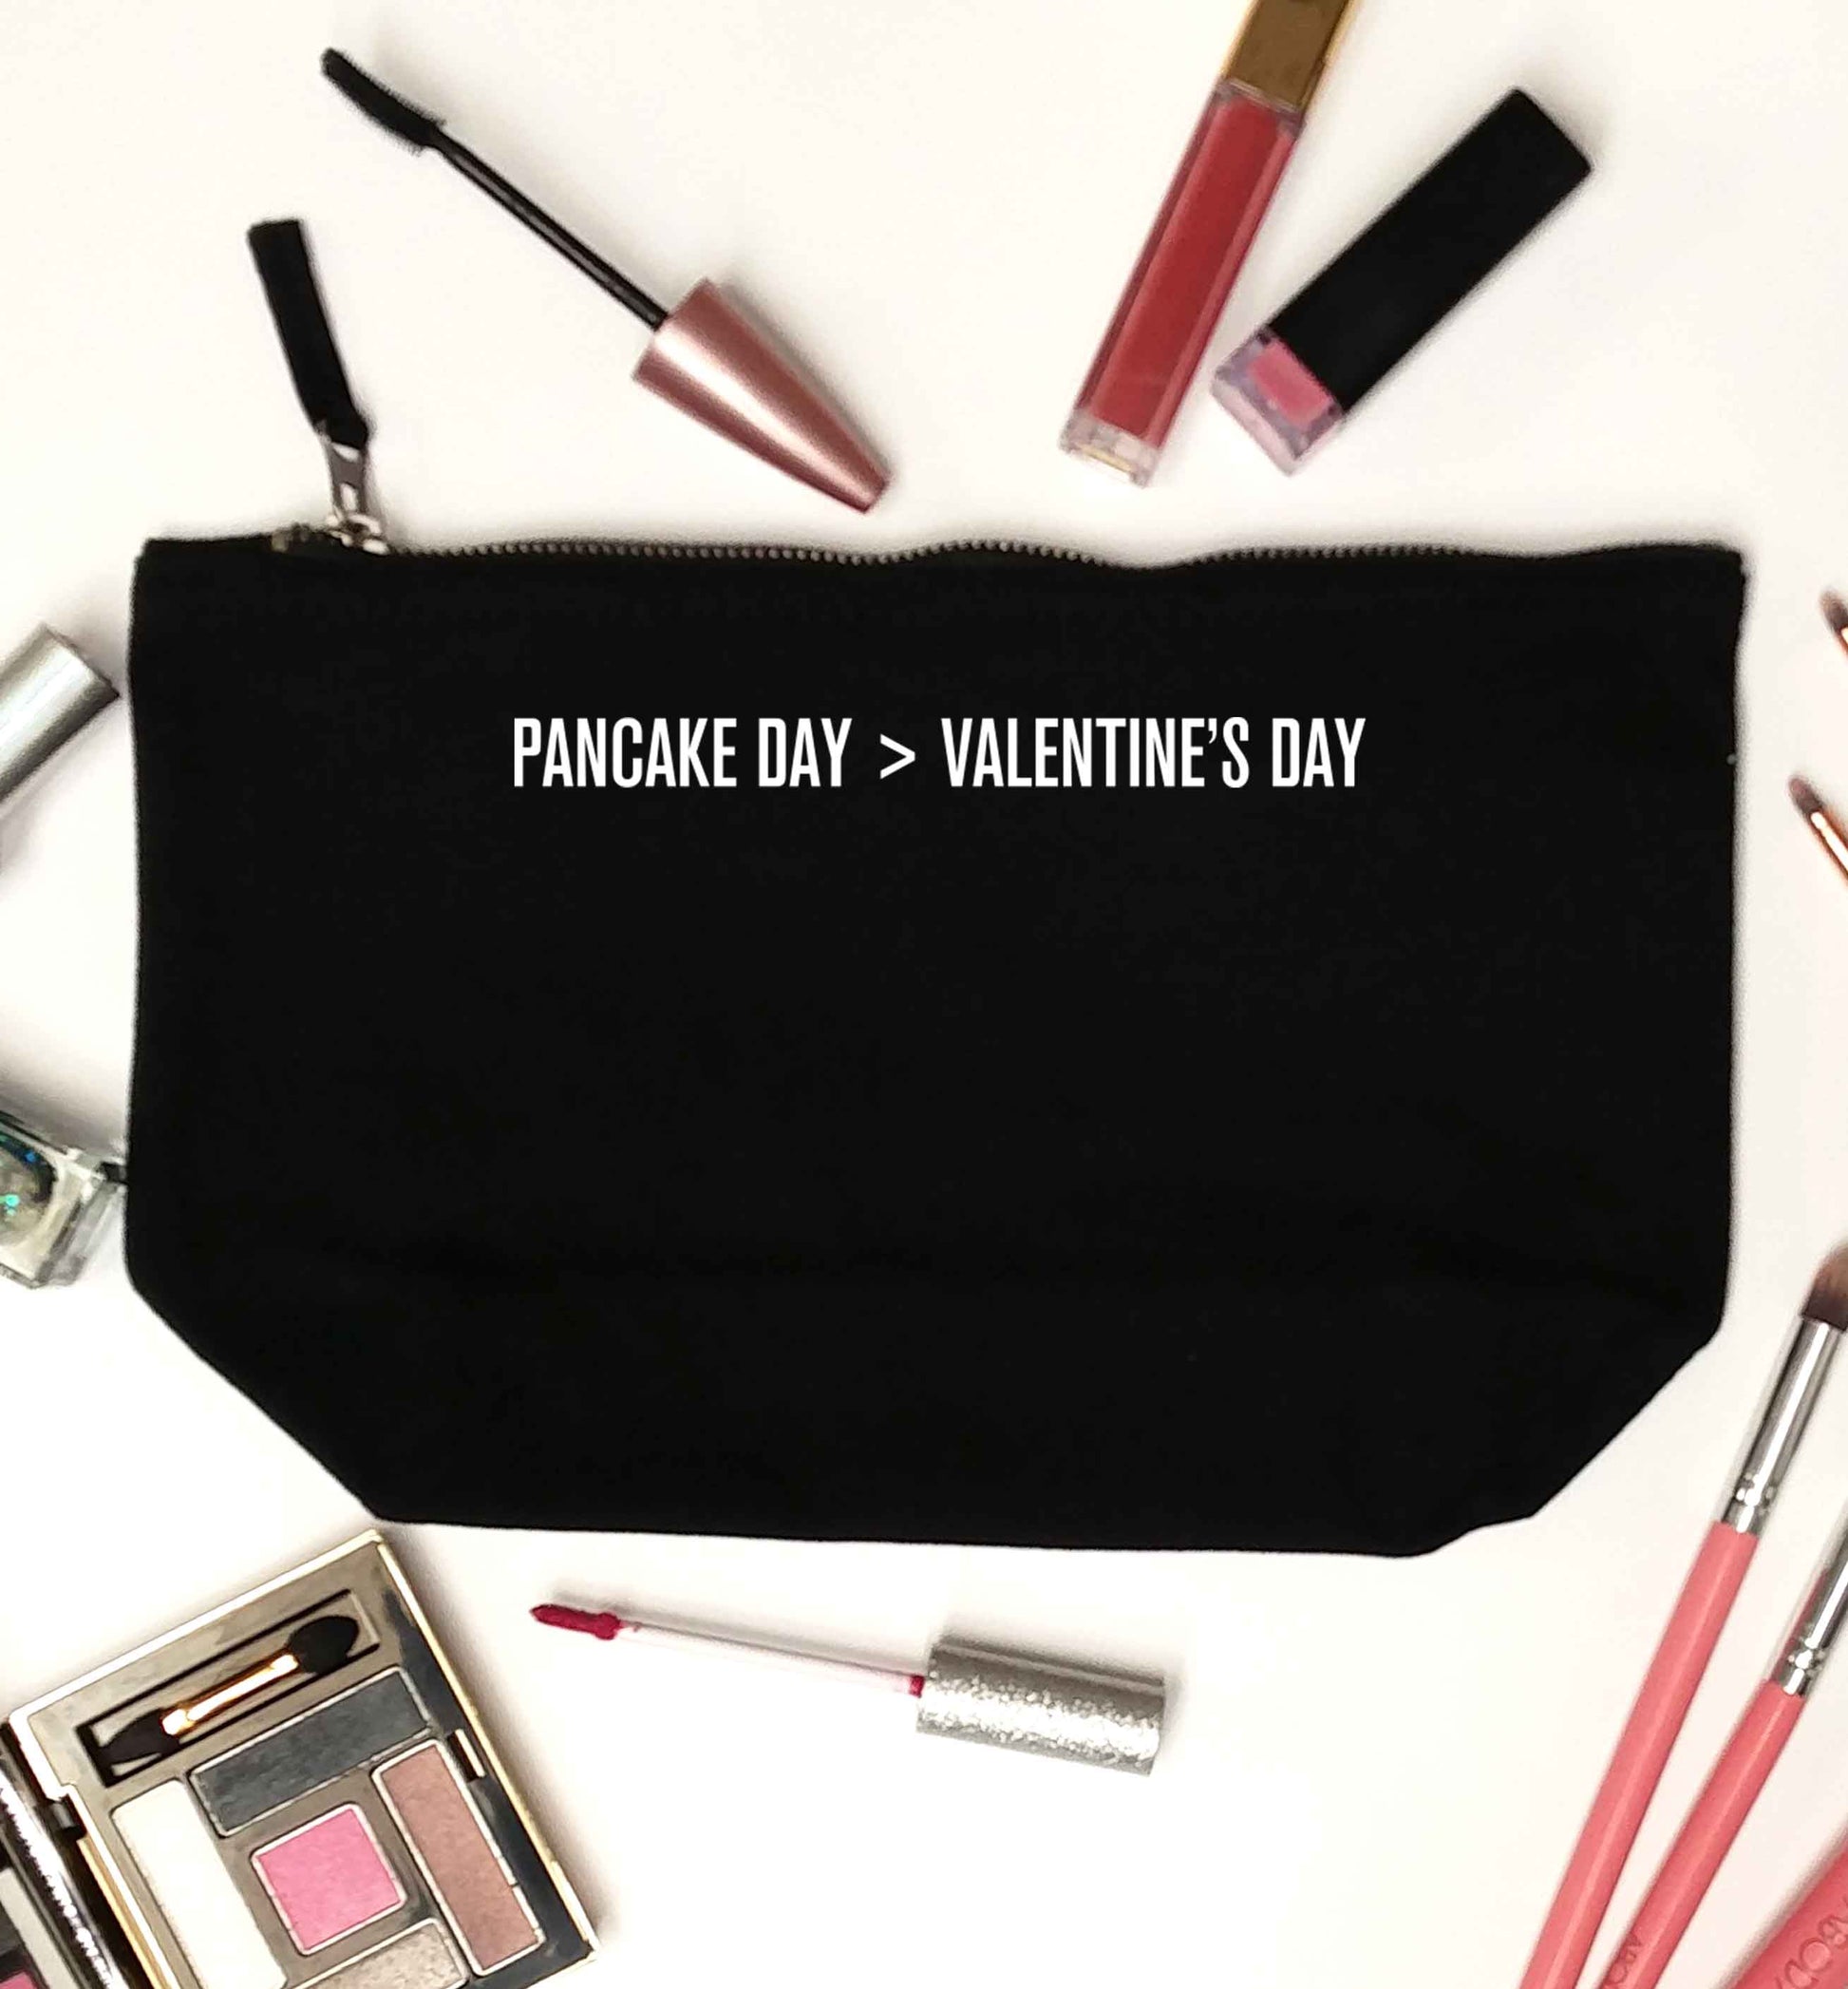 Pancake day > valentines day black makeup bag